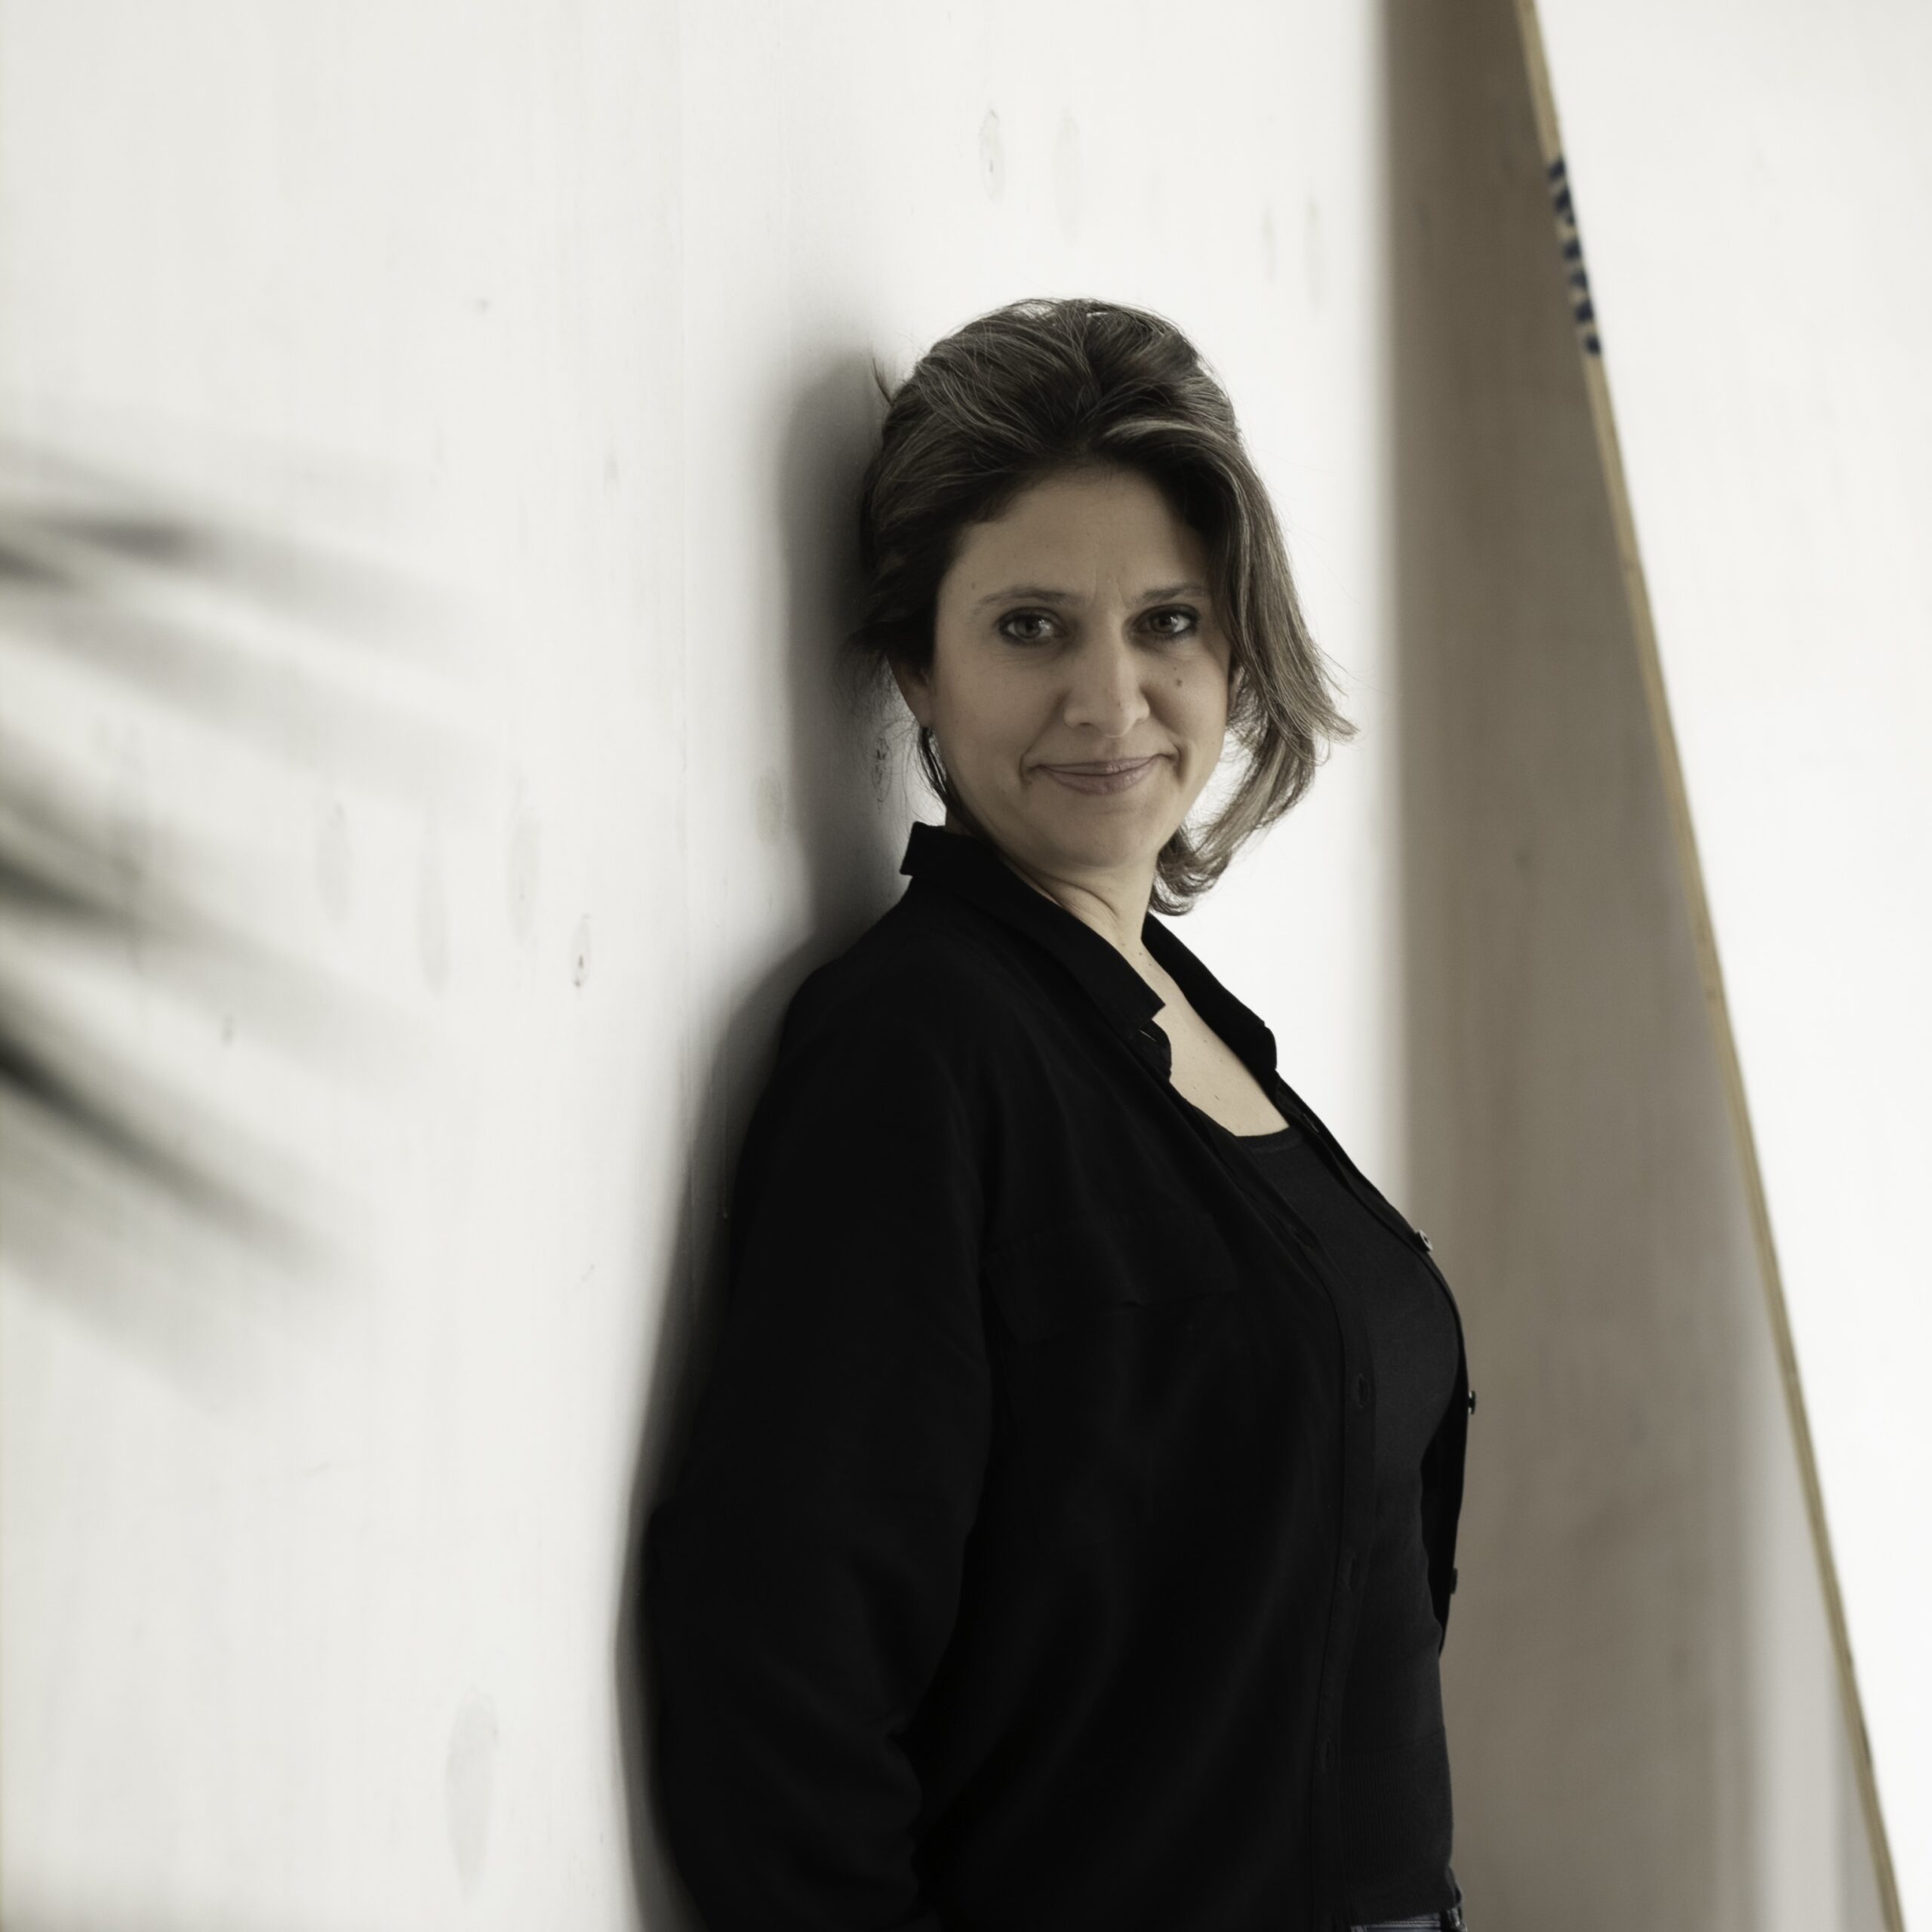 Ποια είναι η Θούλη Μισιρλόγλου, η νέα διευθύντρια του Momus Contemporary